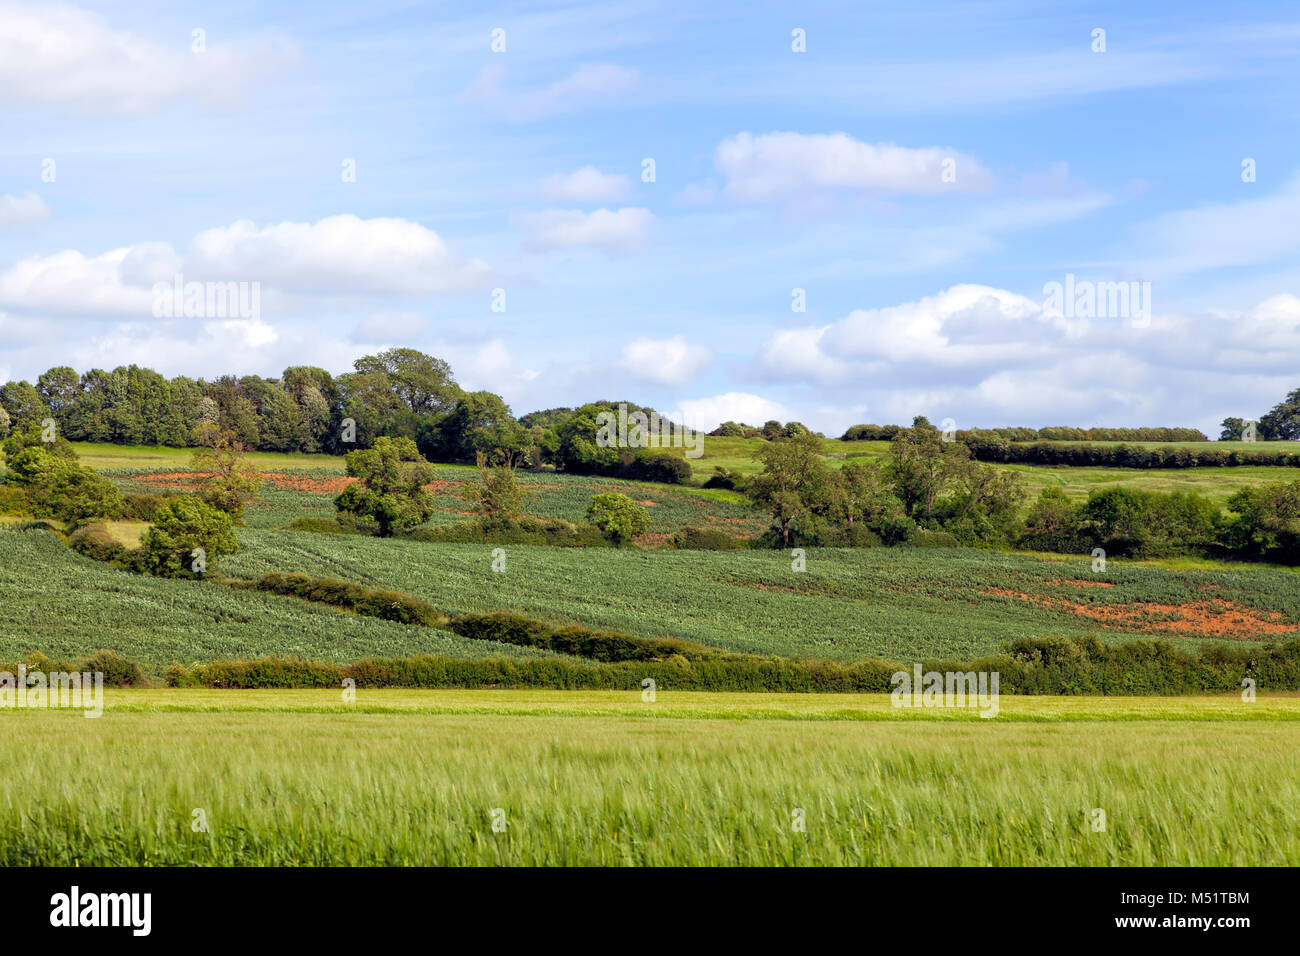 Grano verde i campi agricoli, con un paese di incrocio di sentieri pedonali, siepe, bosco sulla collina, in una campagna inglese, su una soleggiata giornata estiva . Foto Stock